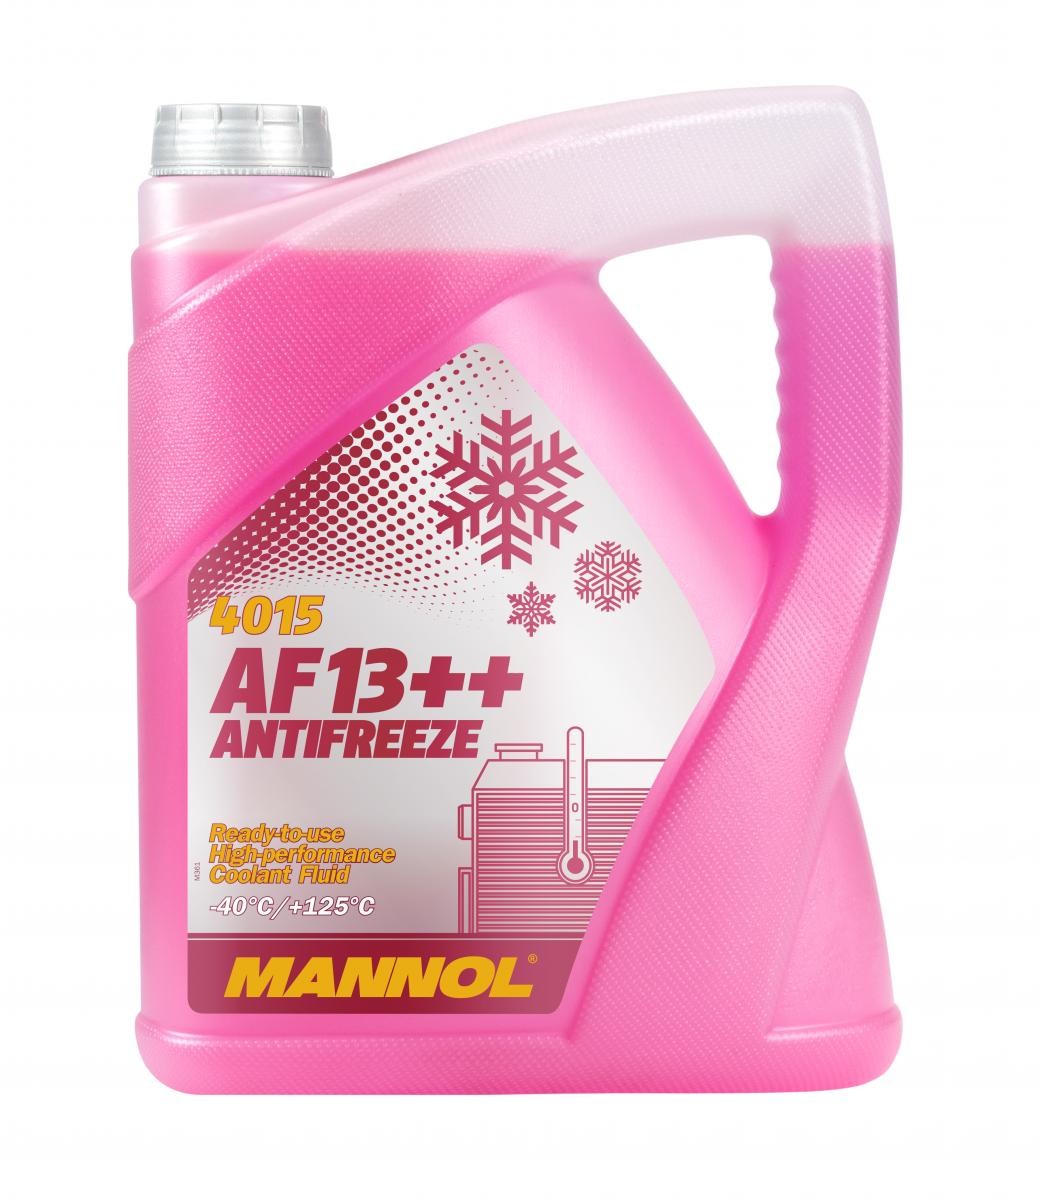 Kupite MANNOL Sredstvo proti zmrzovanju hladilne vode (antifriz) MN4015-5 za NISSAN po zmerni ceni